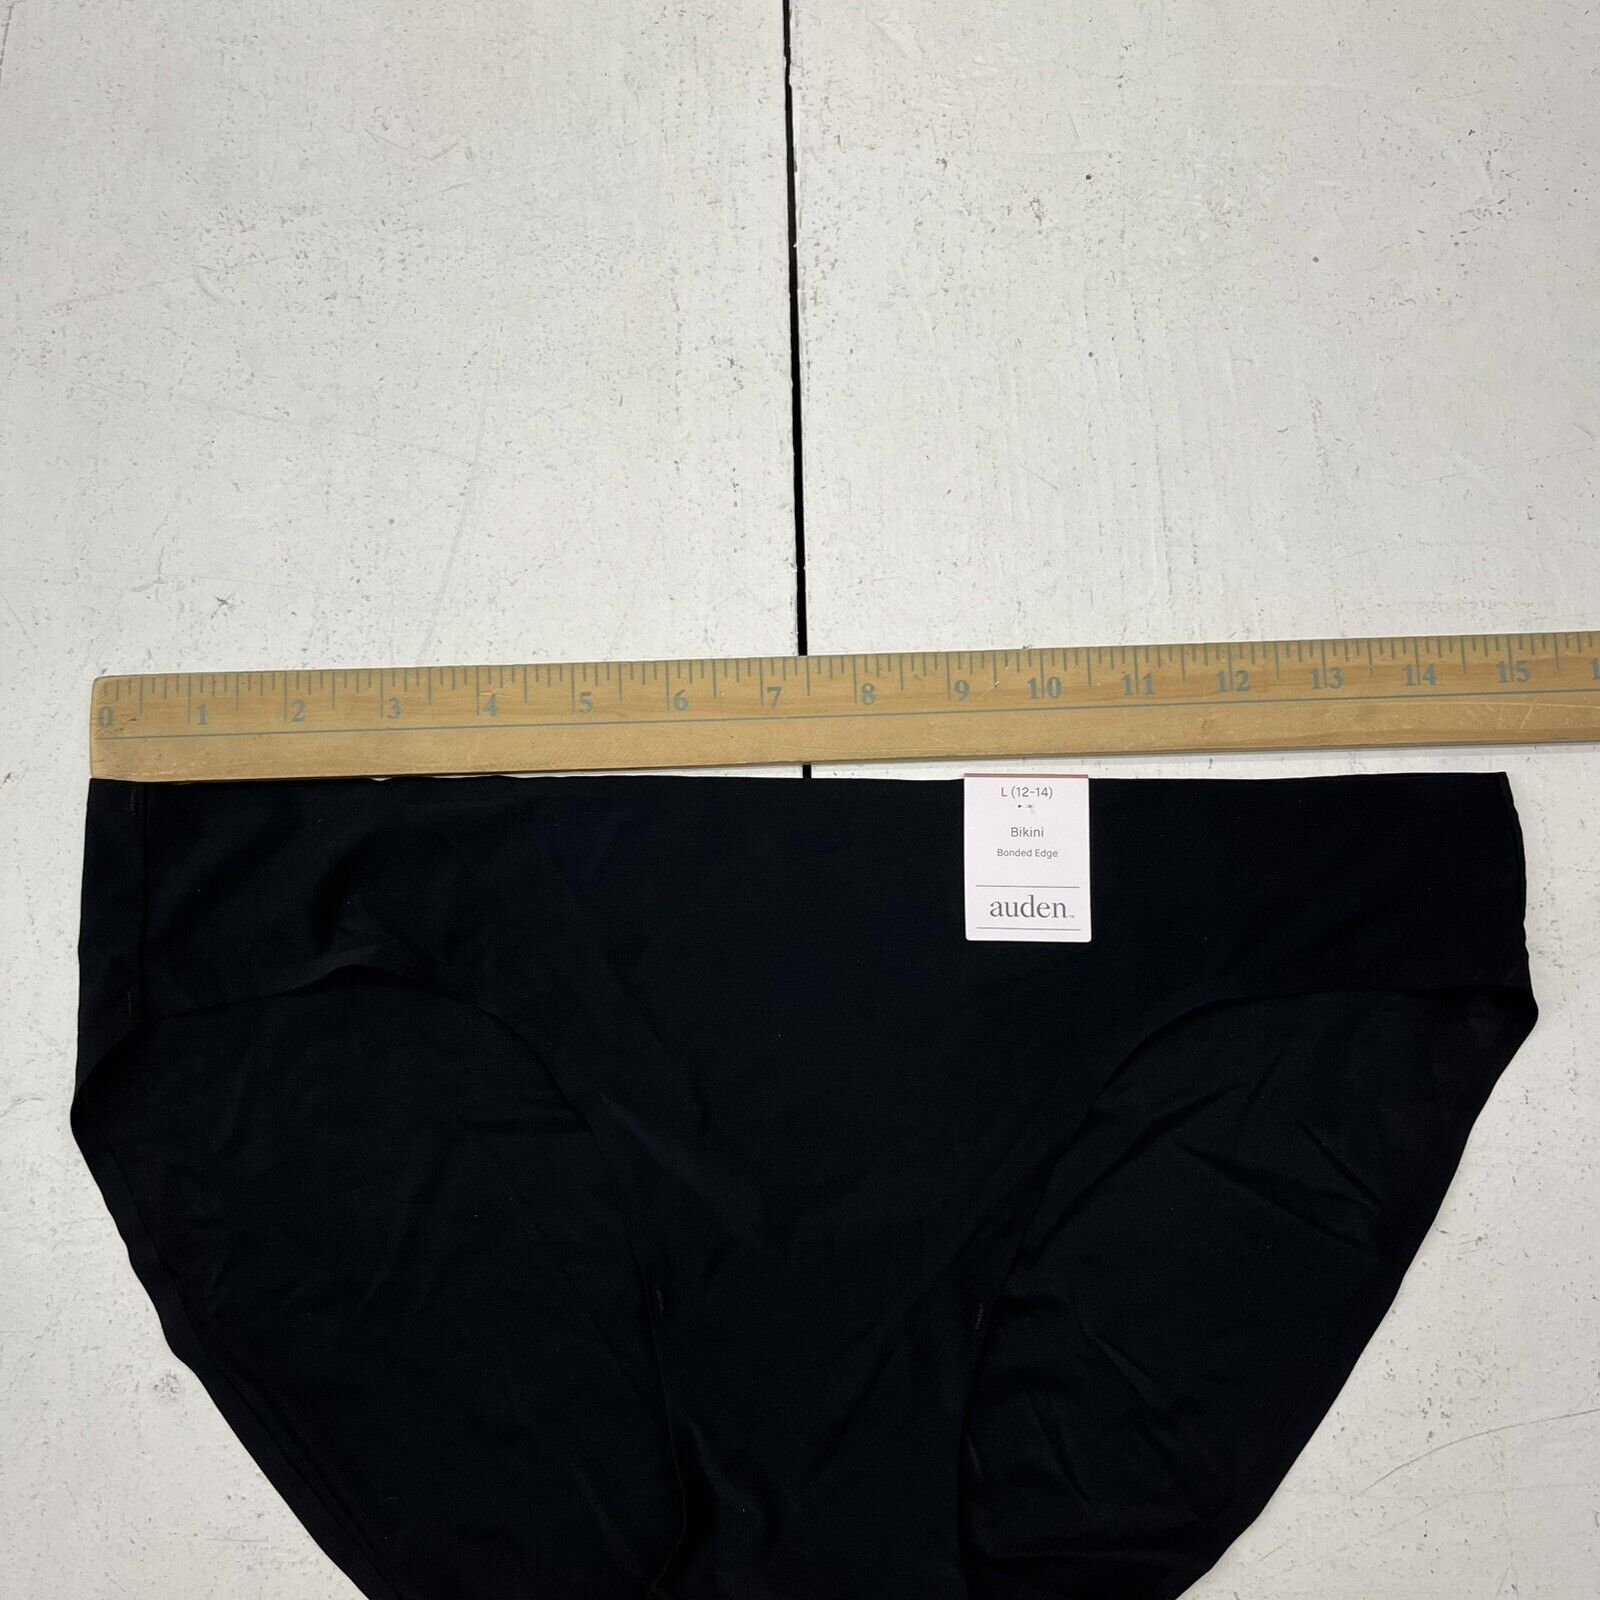 EGDE underwear - EGDE underwear added a new photo — with